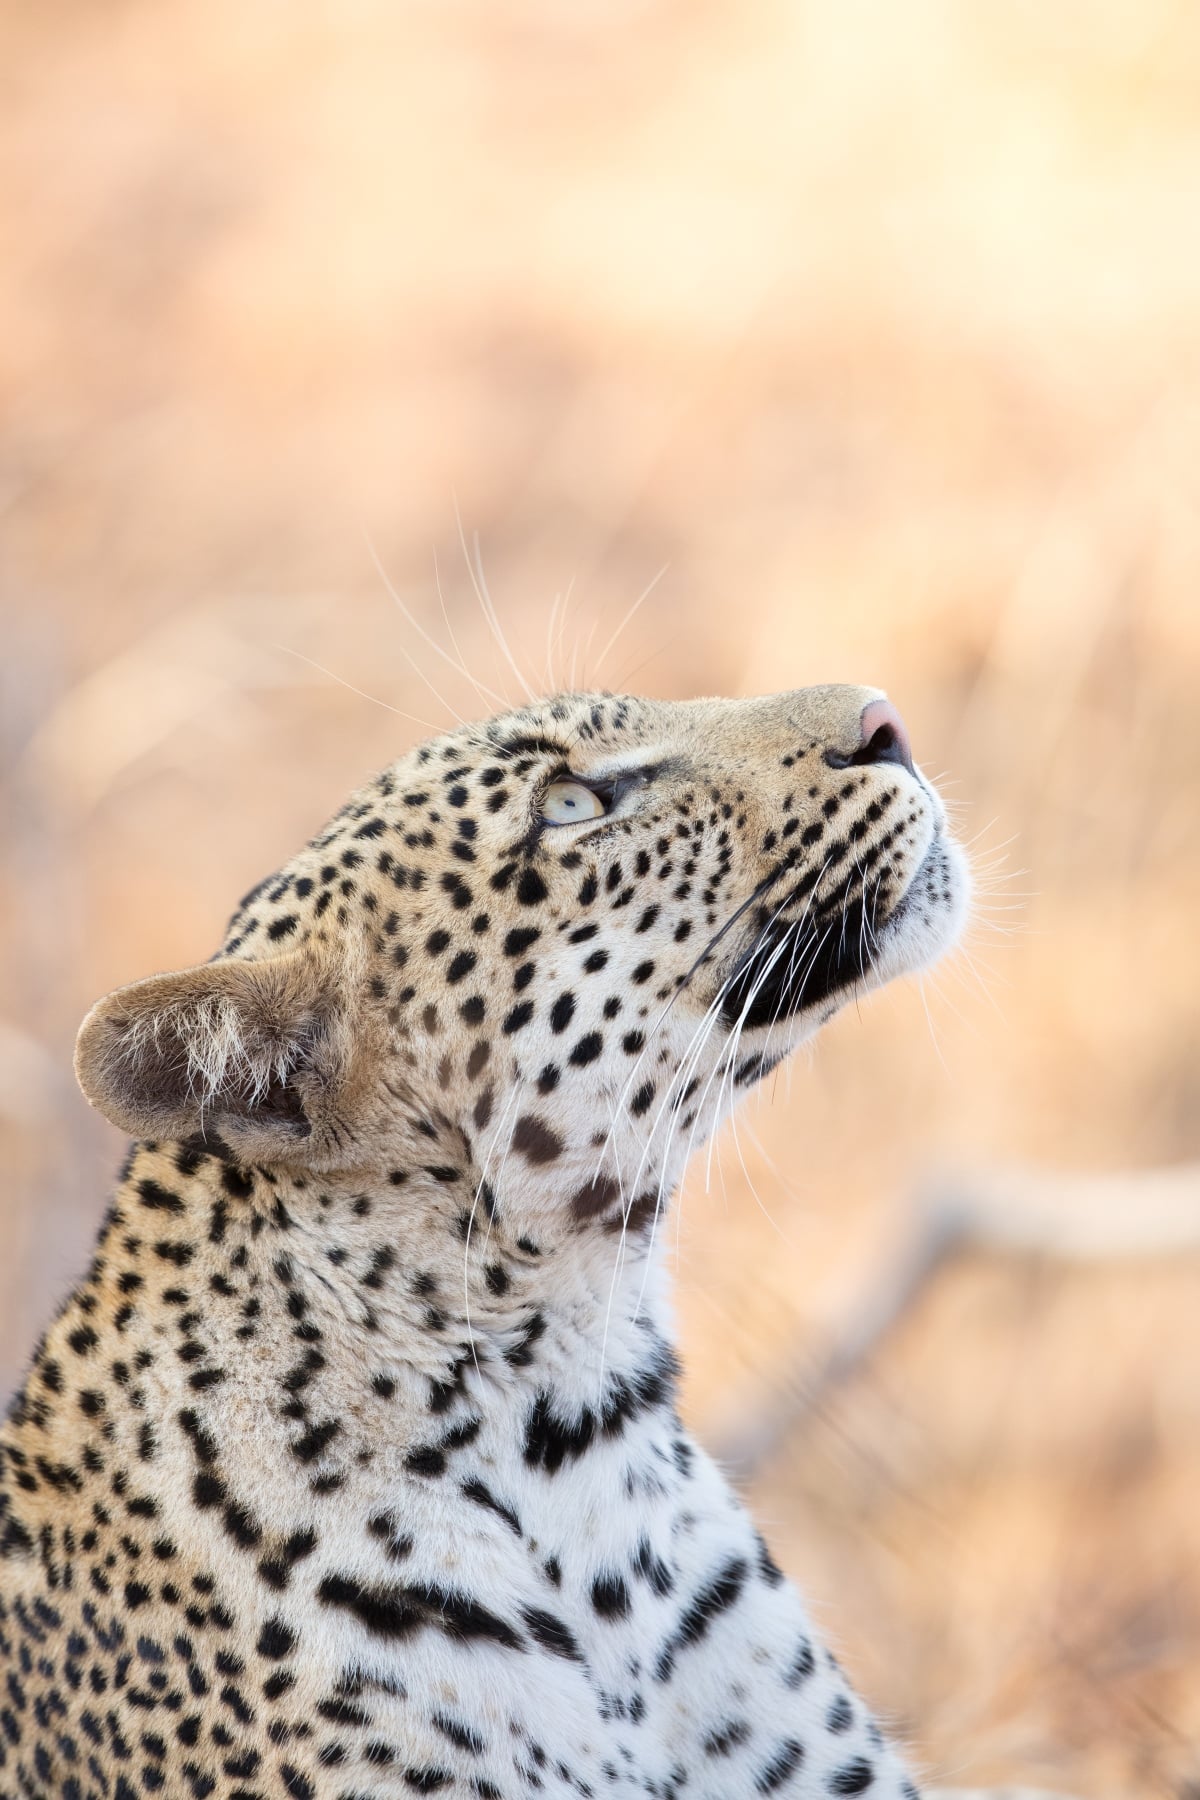 Leopard by Robert Irwin